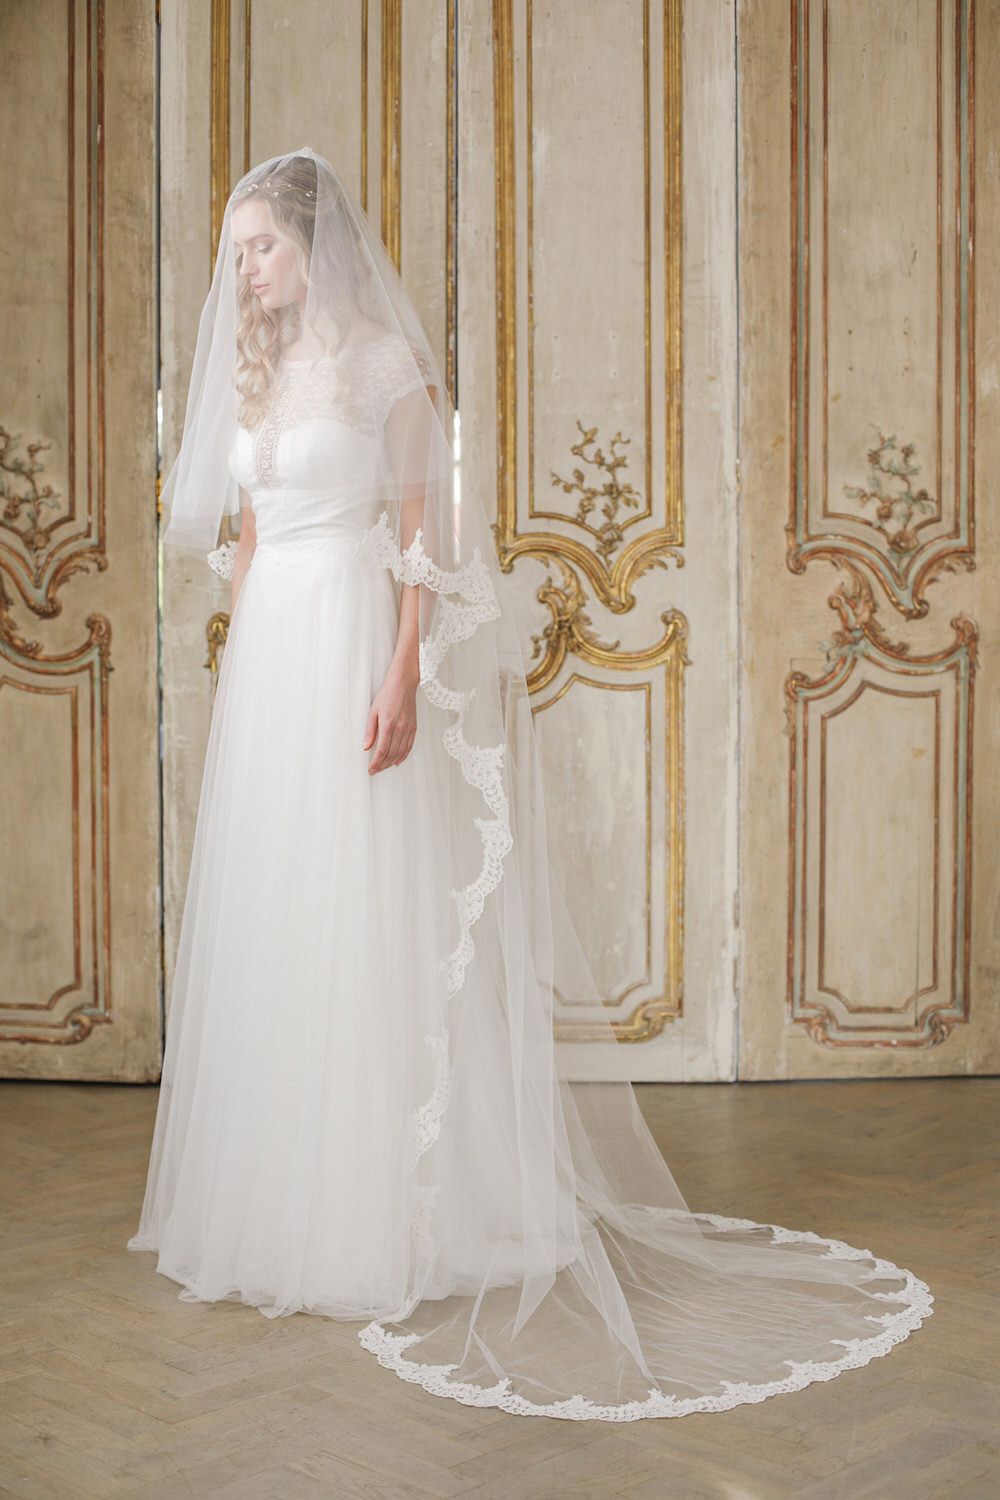 https://www.rockmywedding.co.uk/1800x1800/wp-content/gallery/britten-weddings-veil-guide/Two-tier-semi-edge-lace-wedding-veil-Lucia-Britten-weddings.jpg?fit=1